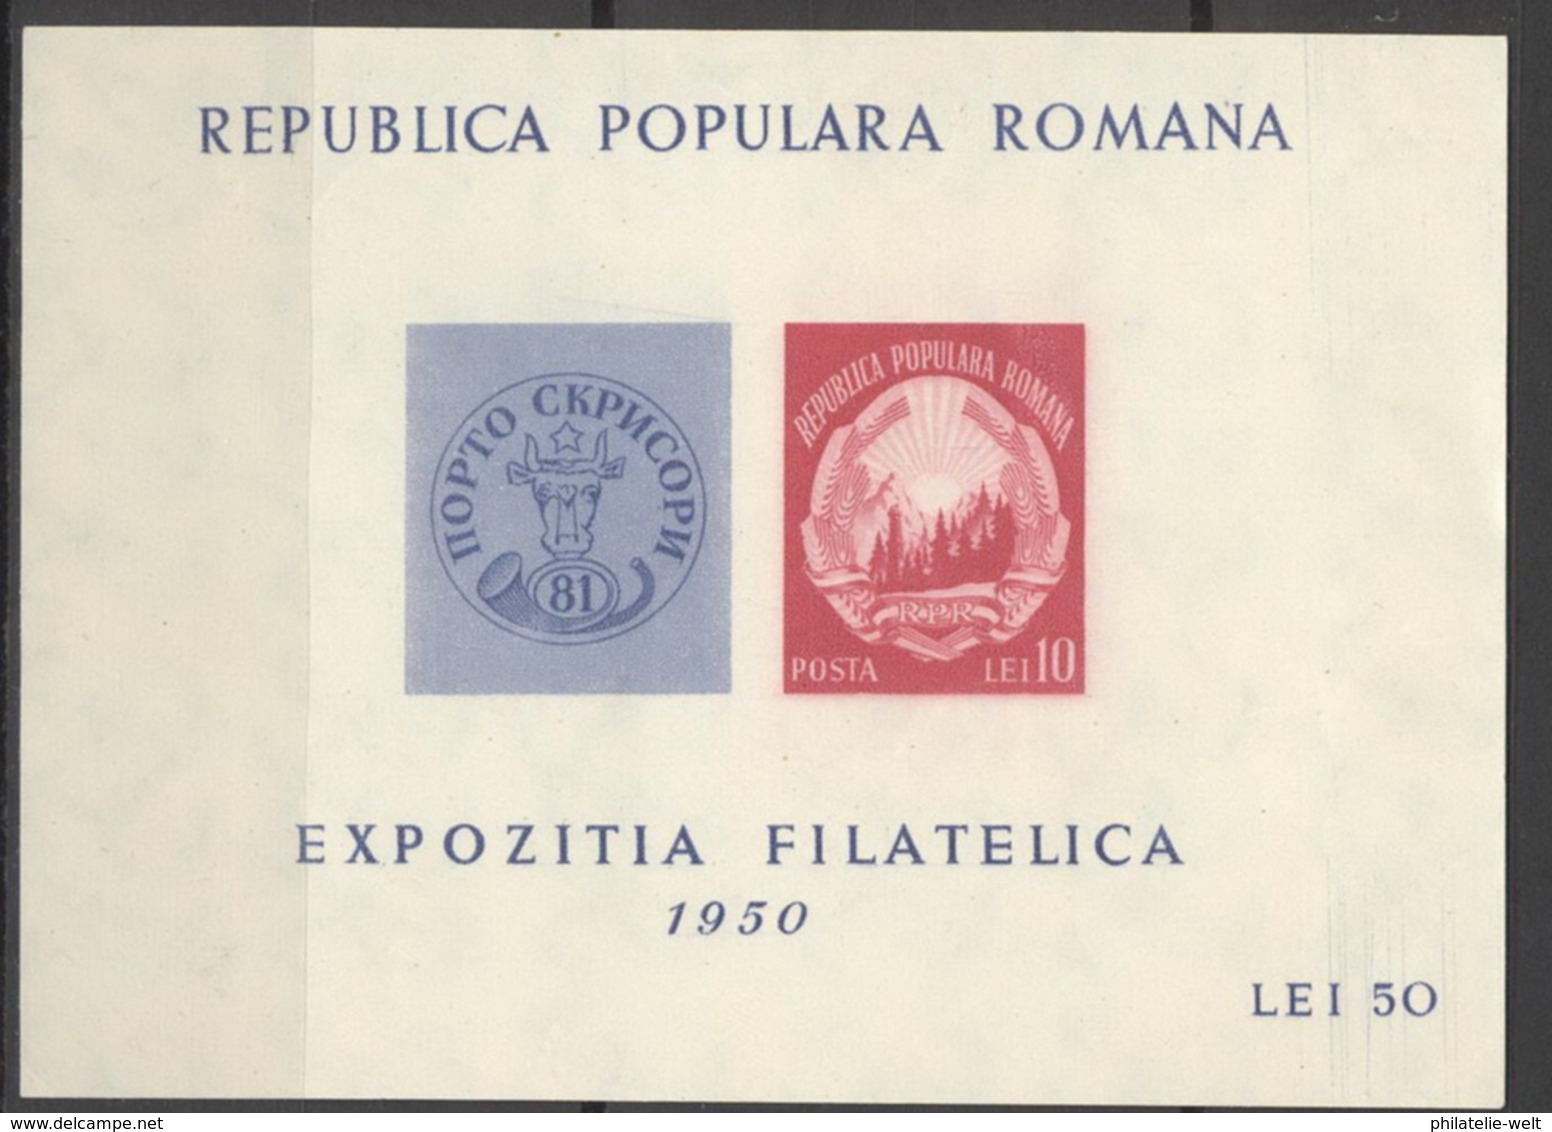 Rumänien Block 39 ** Postfrisch Briefmarkenausstellung - Blocks & Sheetlets